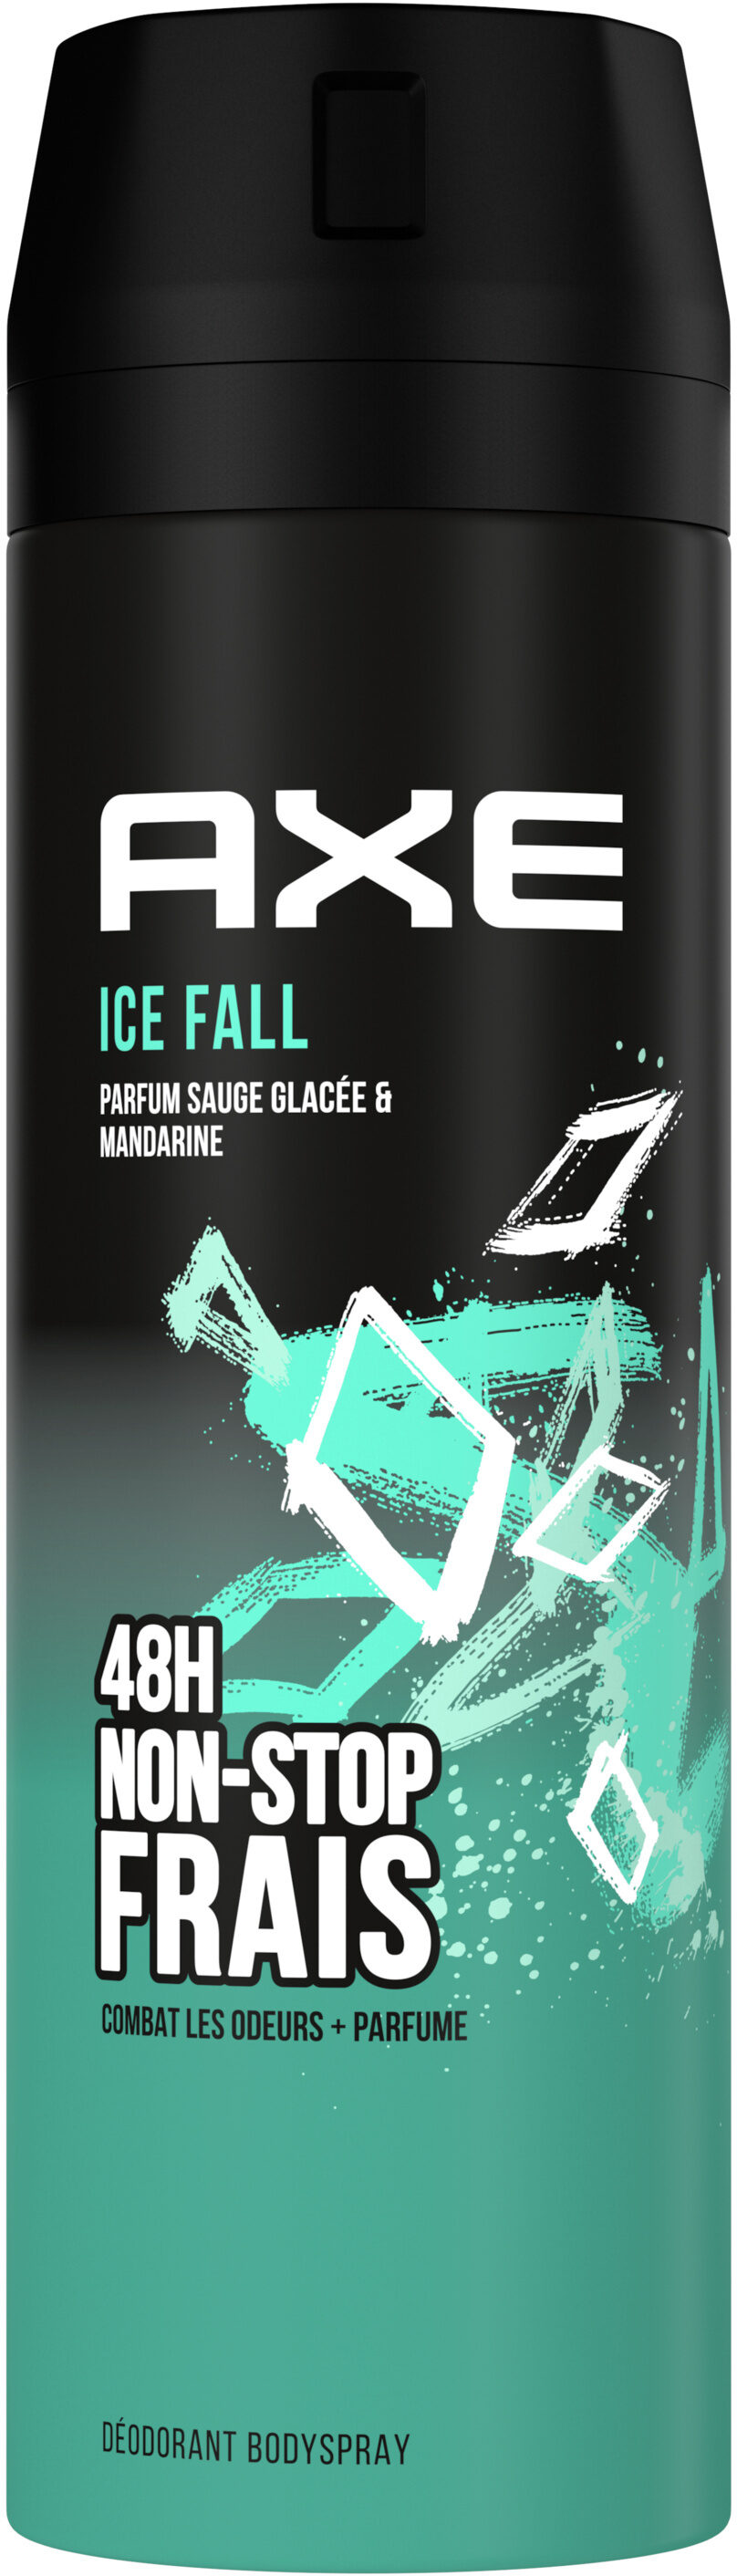 Axe Déodorant Homme Bodyspray Ice Fall 48h Non-Stop Frais 200ml - Produit - fr